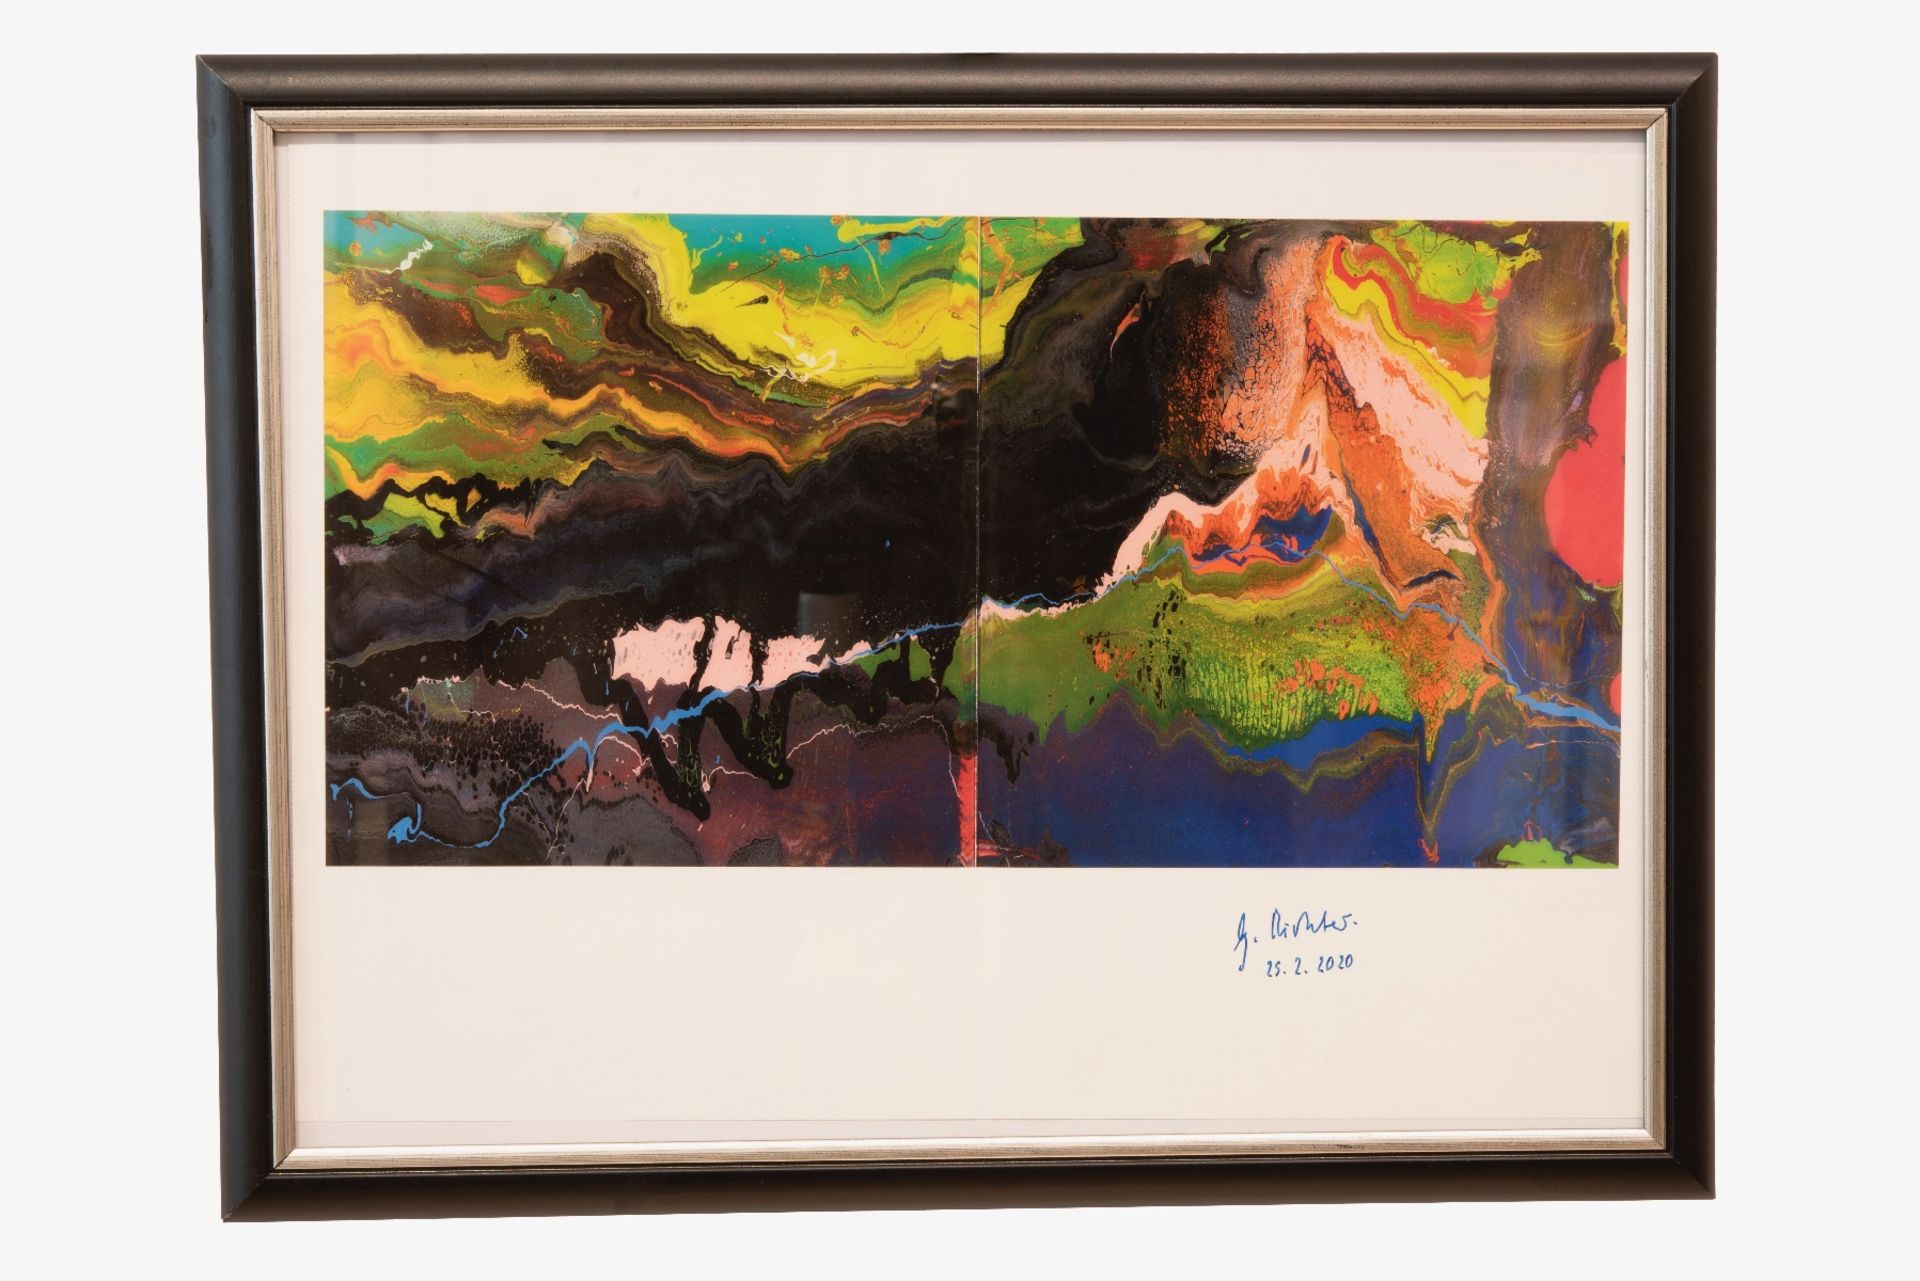 Gerhard Richter* (1932), Flow 933-3 von 2013 | Gerhard Richter* (1932), Flow 933-3 from 2013